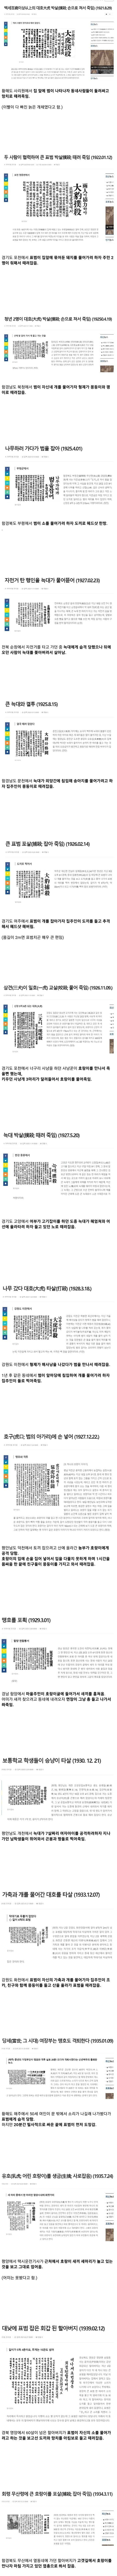 한국인의 호환 대응법.jpg